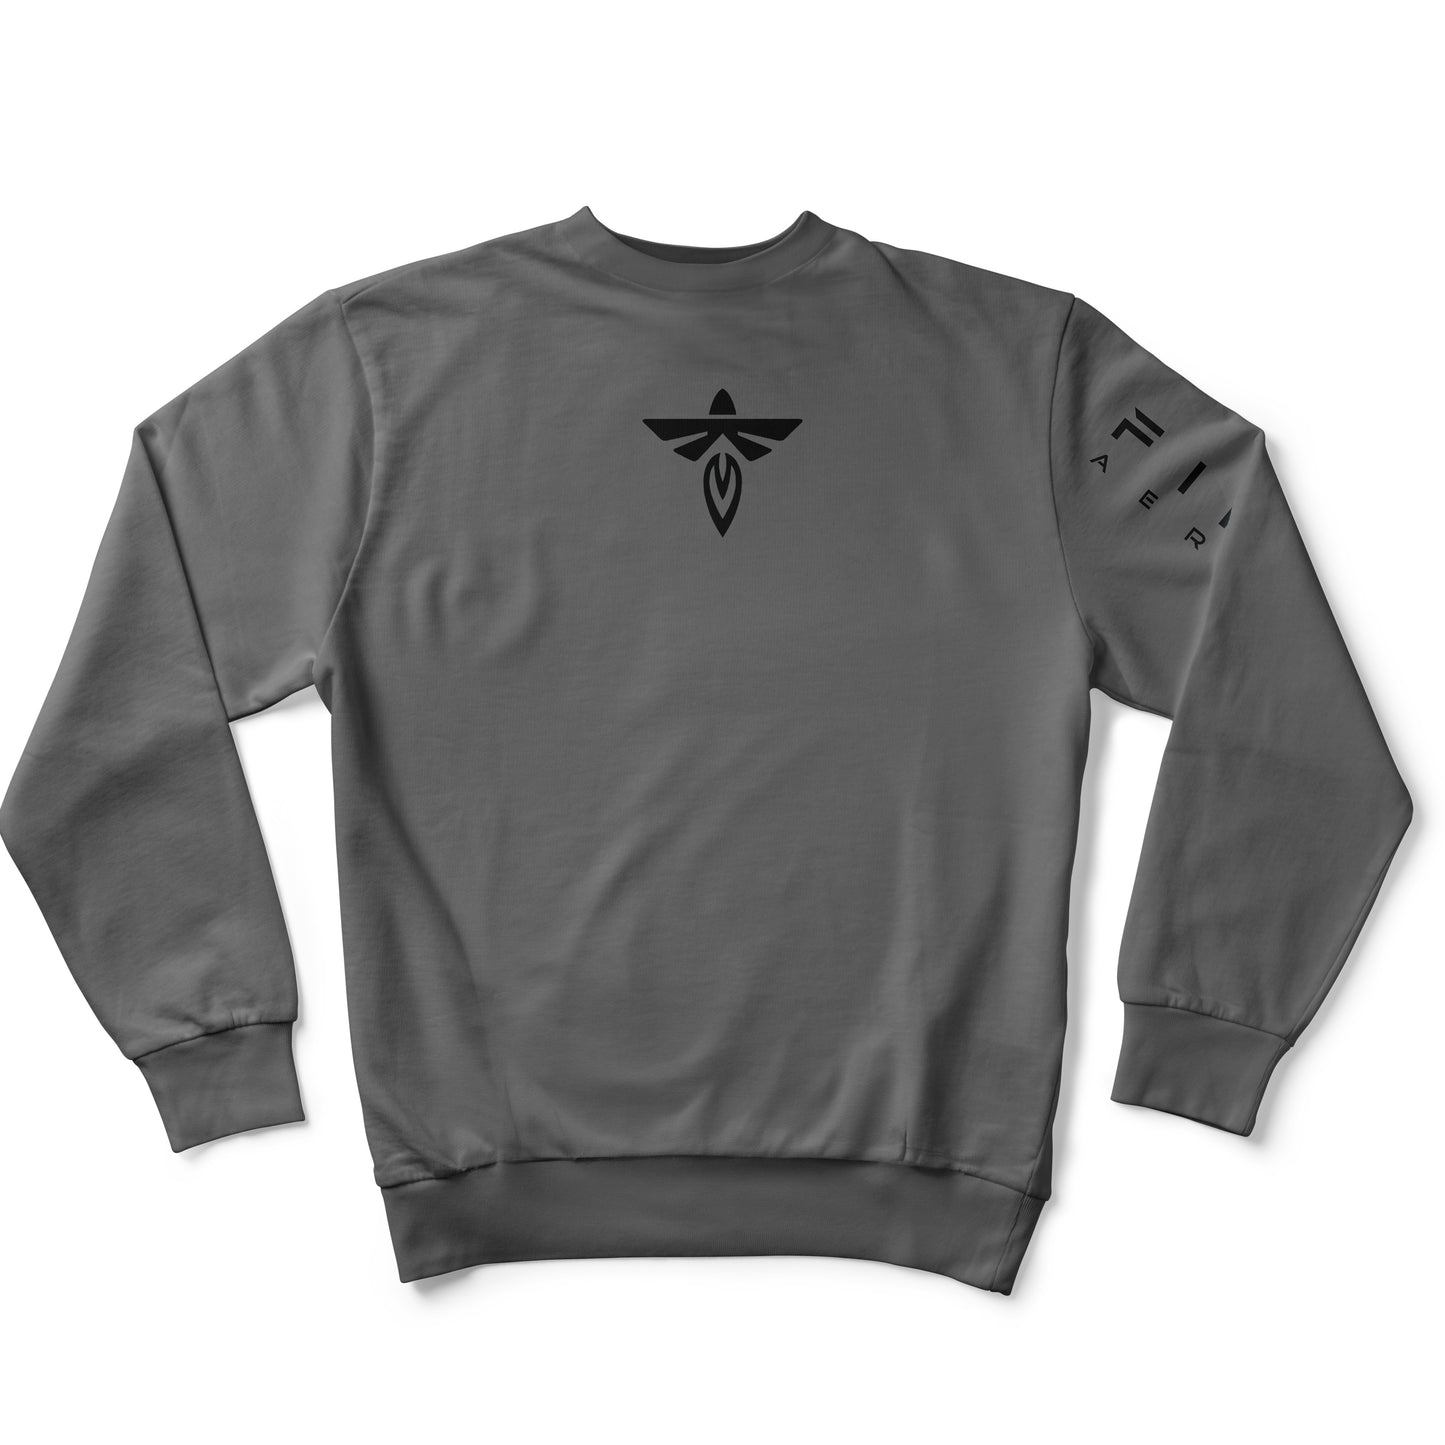 Firefly Crewneck Sweatshirt